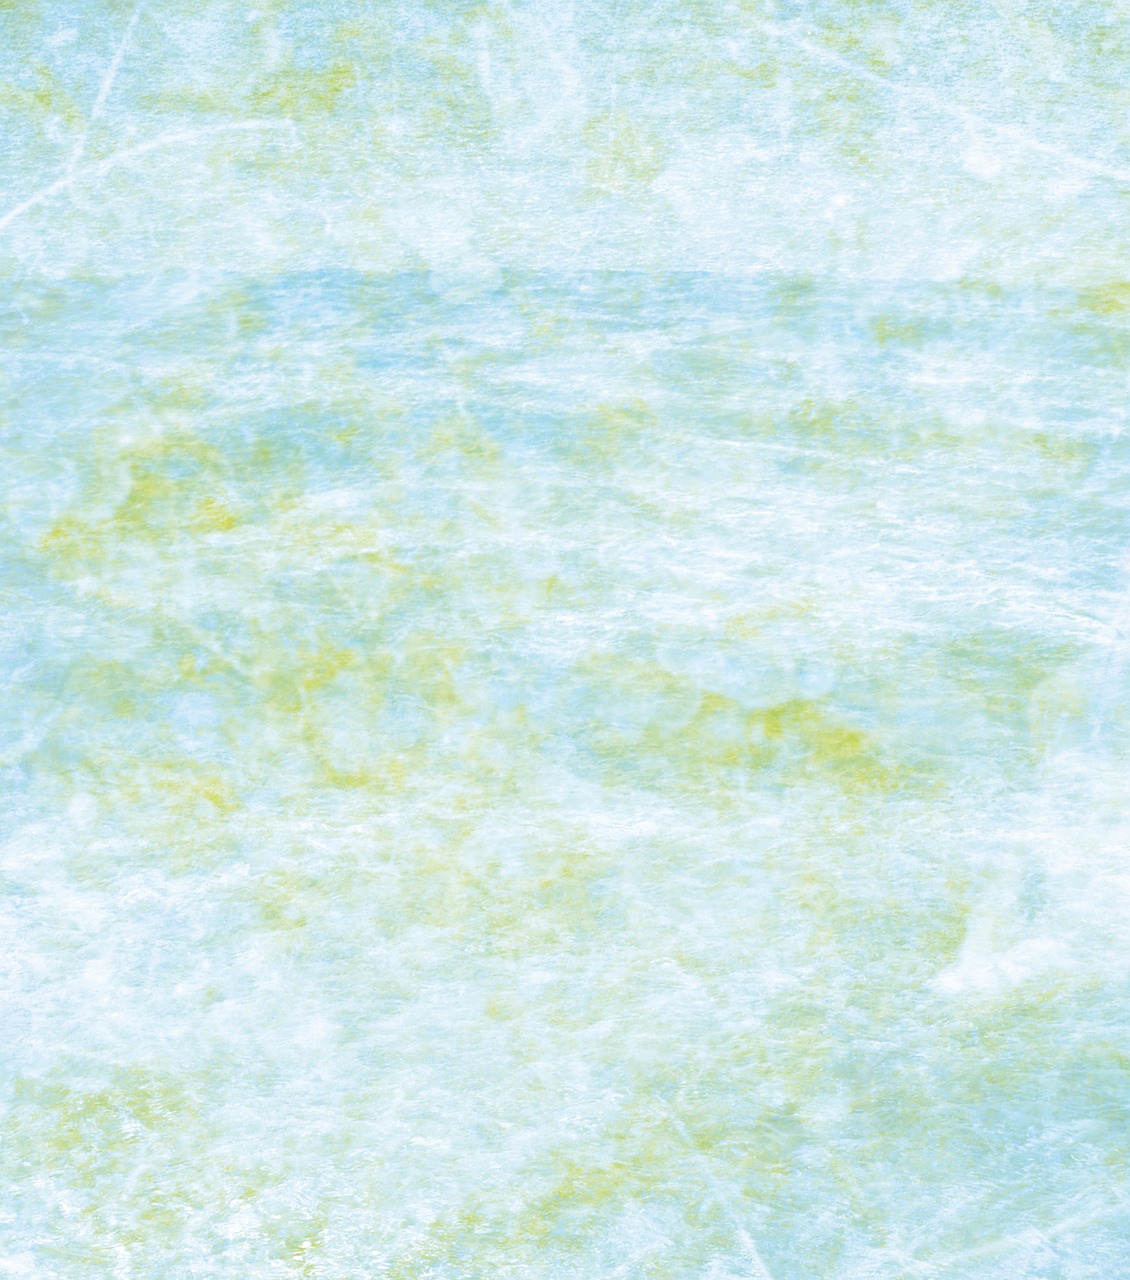 texture aquatic blue free photo